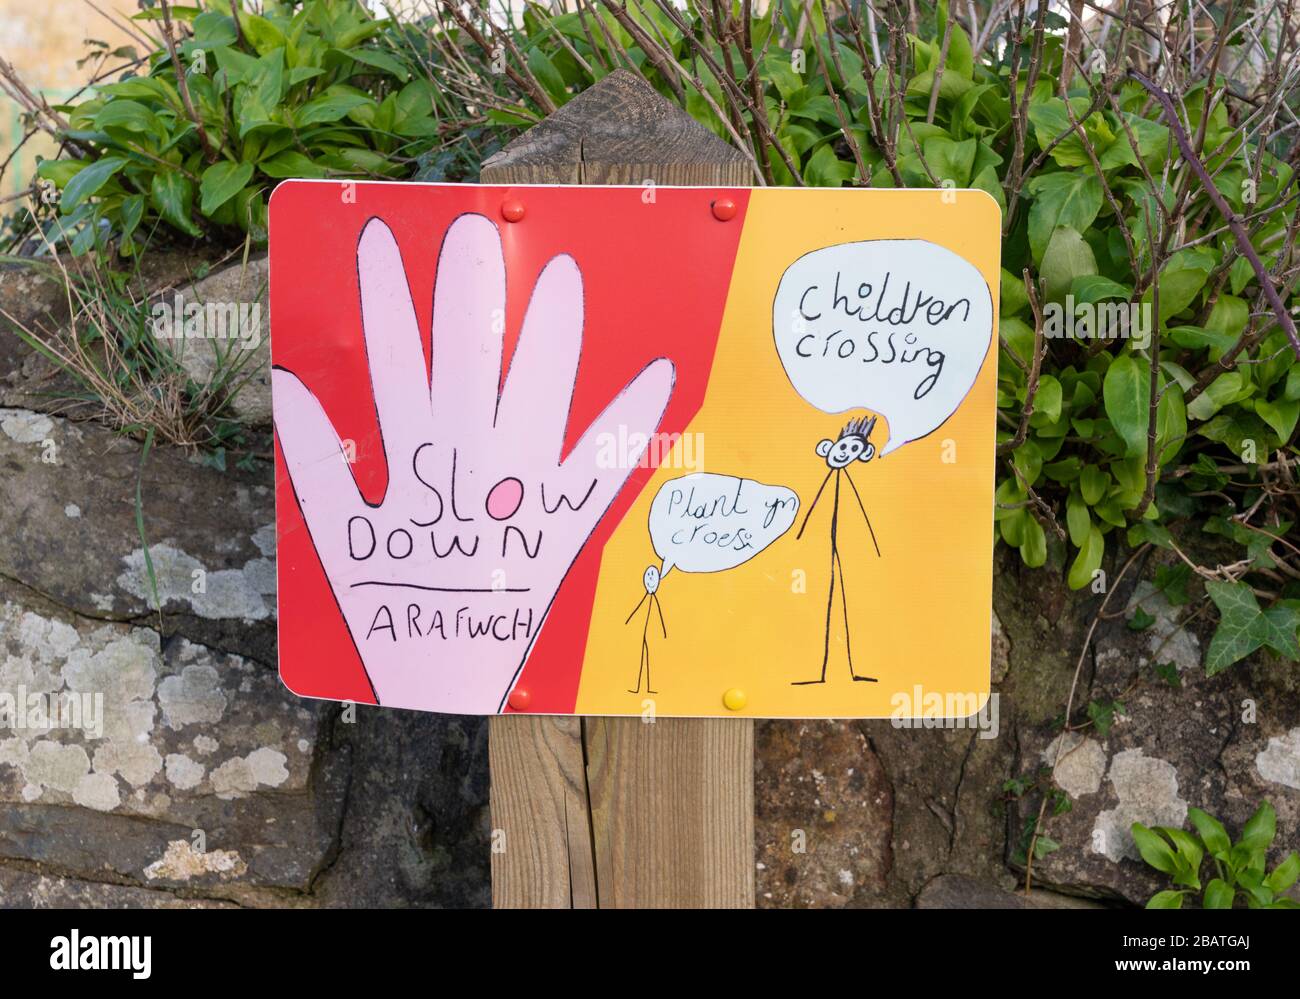 Ein handgezeichnetes Schild außerhalb einer Schule, das auf Englisch und Walisisch rät, sich mit dem Überqueren von Kindern zu verlangsamen. Newport, Pembrokeshire. Wales. GROSSBRITANNIEN Stockfoto